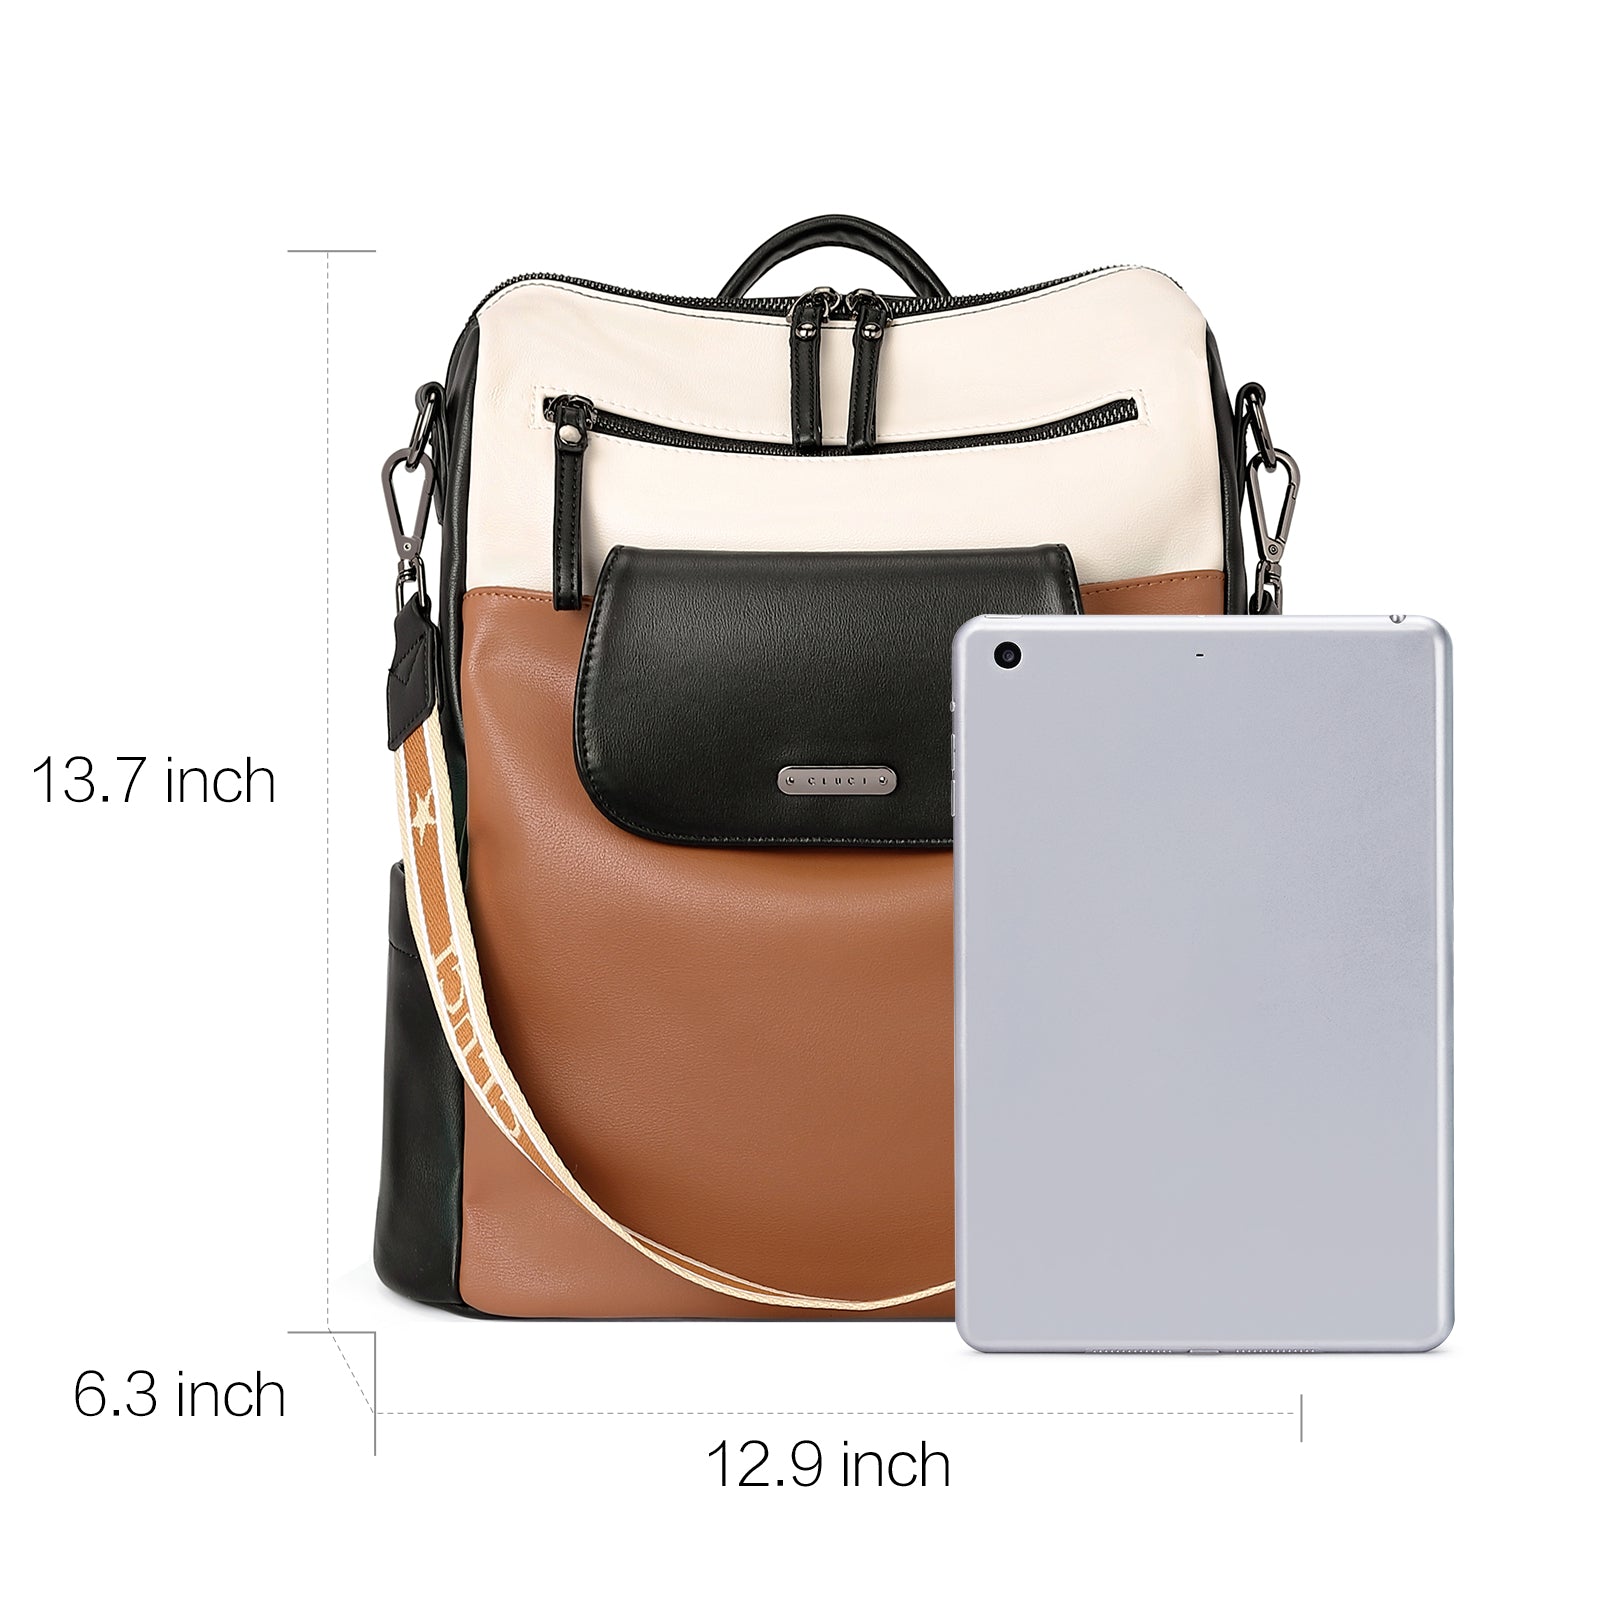 Mini Backpack Small Backpack Mini Backpack Purse Brown - Etsy | Mini backpack  purse, Brown leather backpack, Small backpack purse